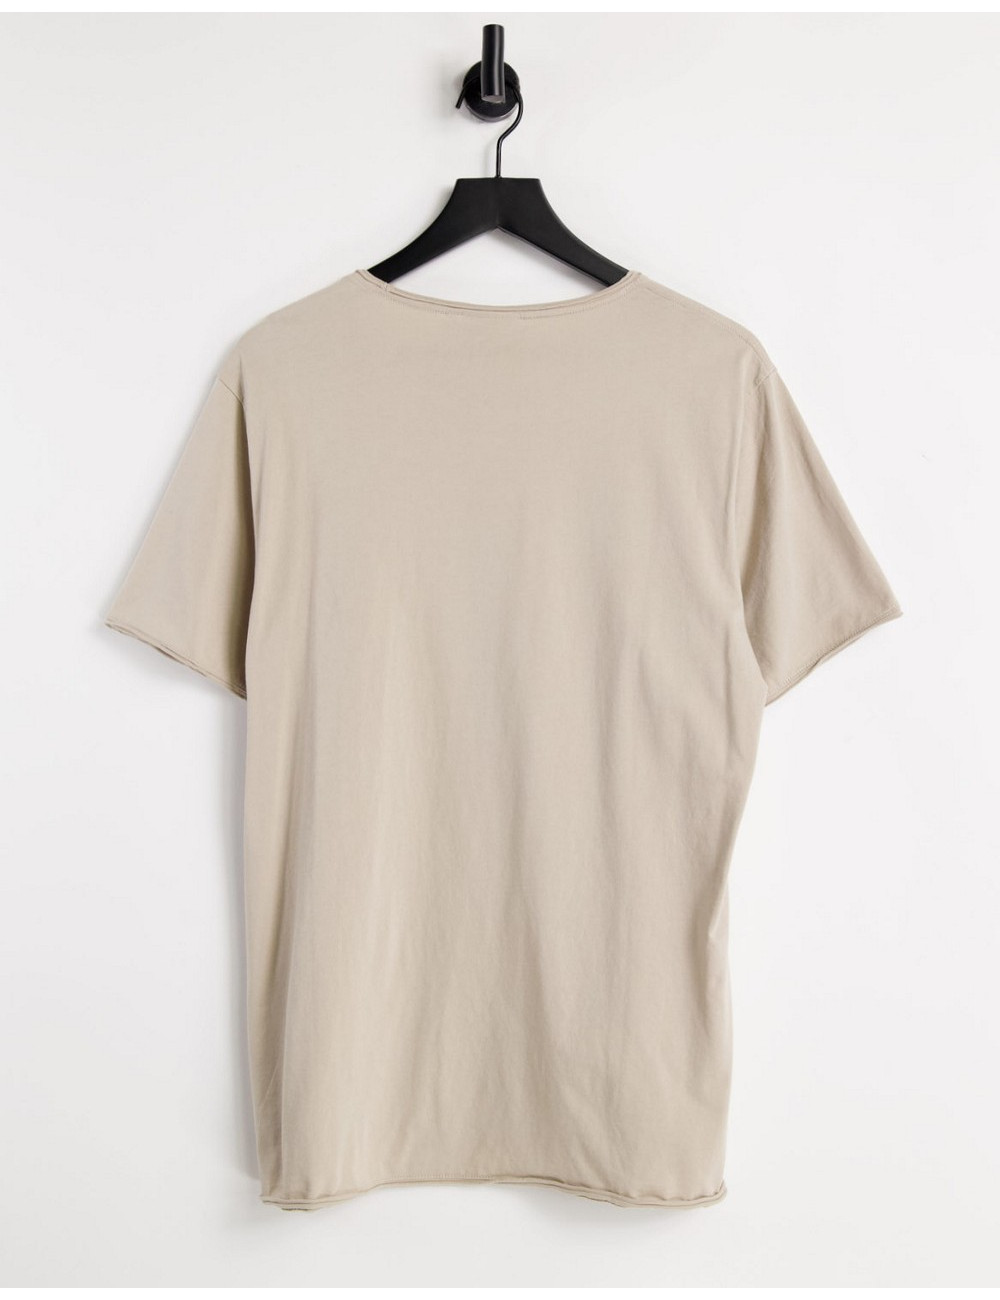 Weekday dark t-shirt in beige